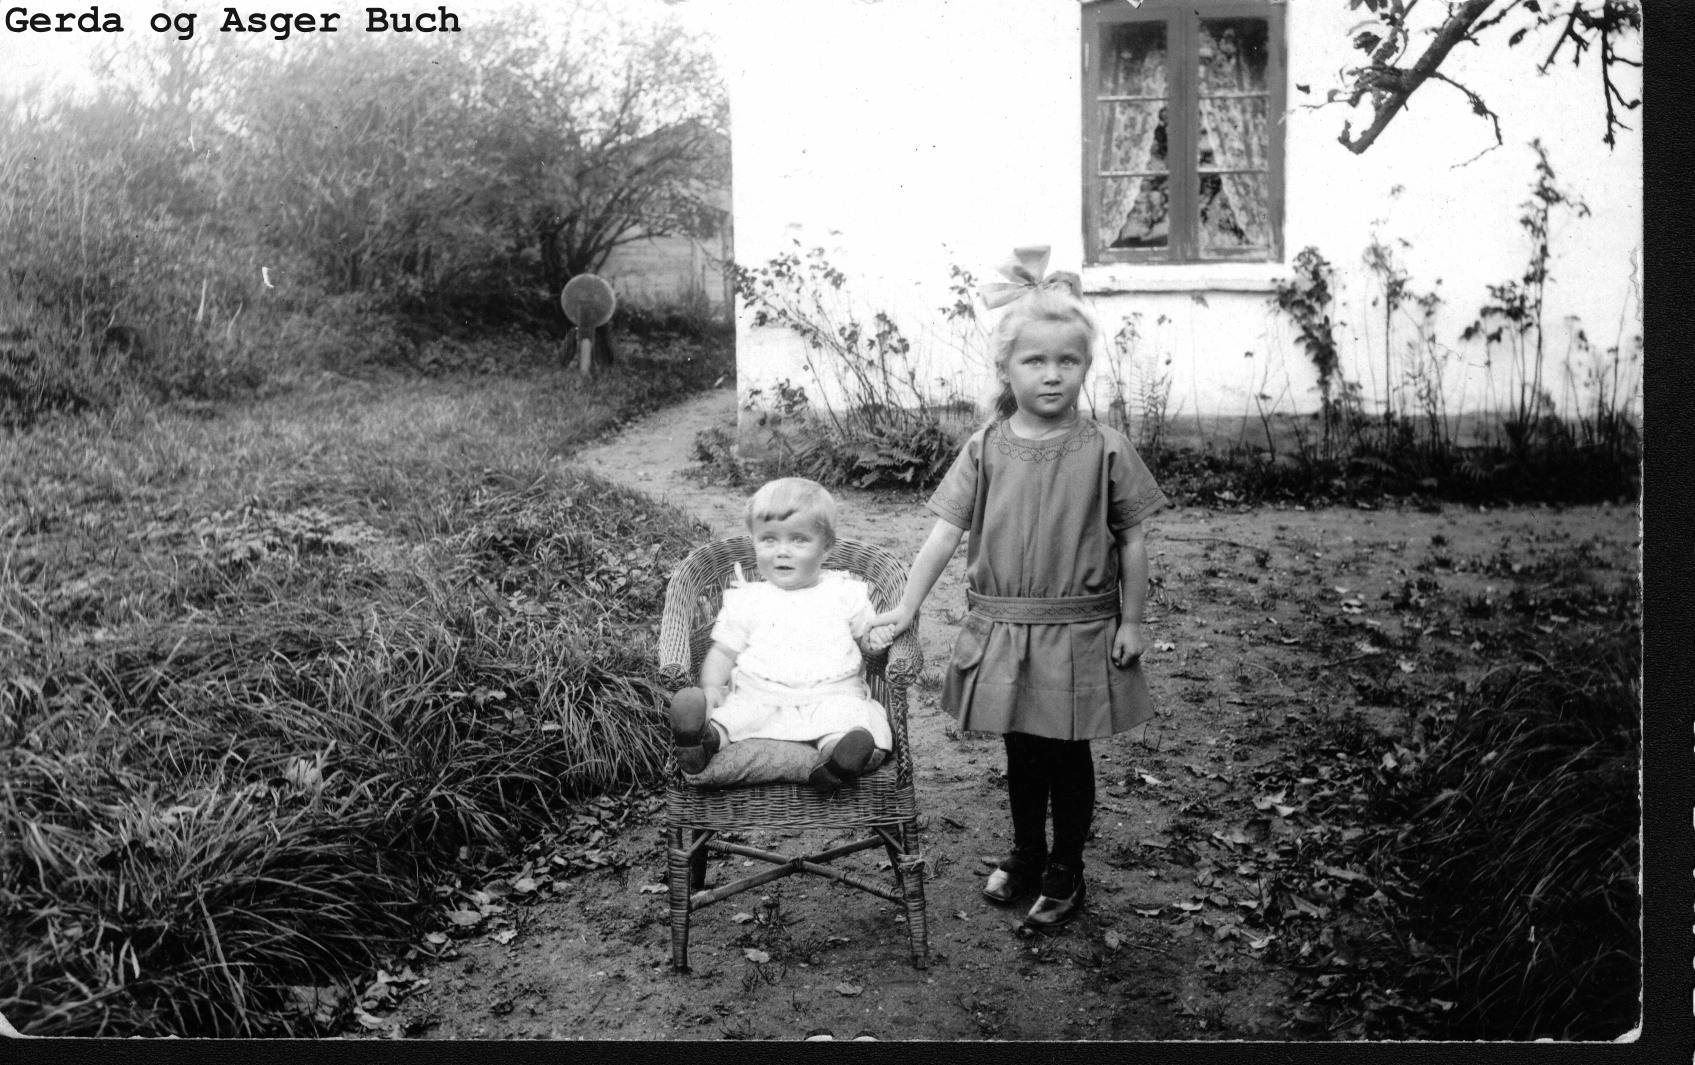 Gerda og Asger Buch som brn